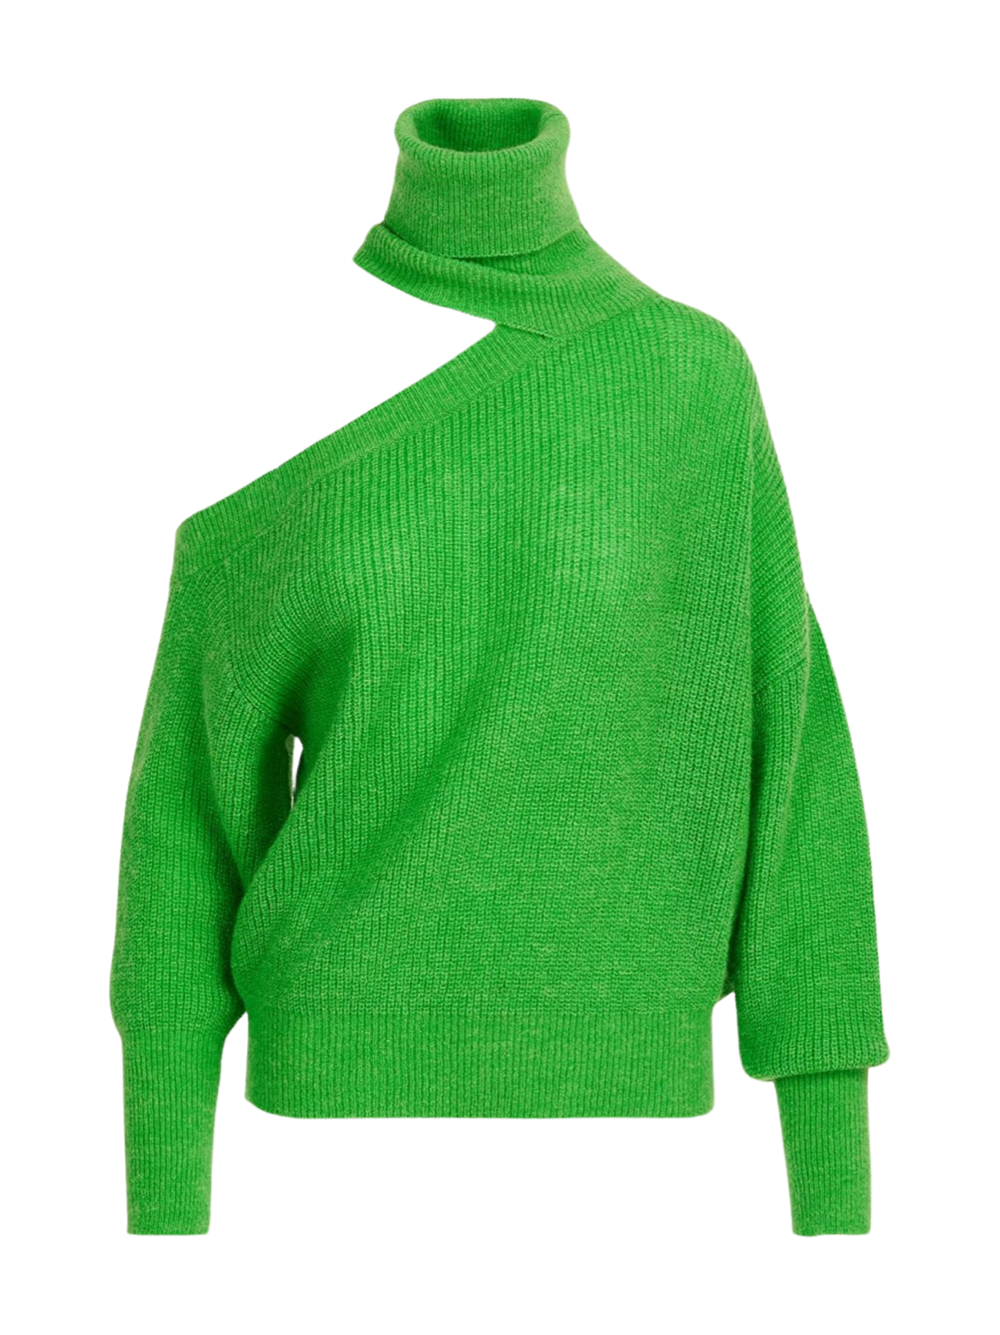 Essentiel Antwerp Effectif Turtleneck Pullover Sweater in Bel Air